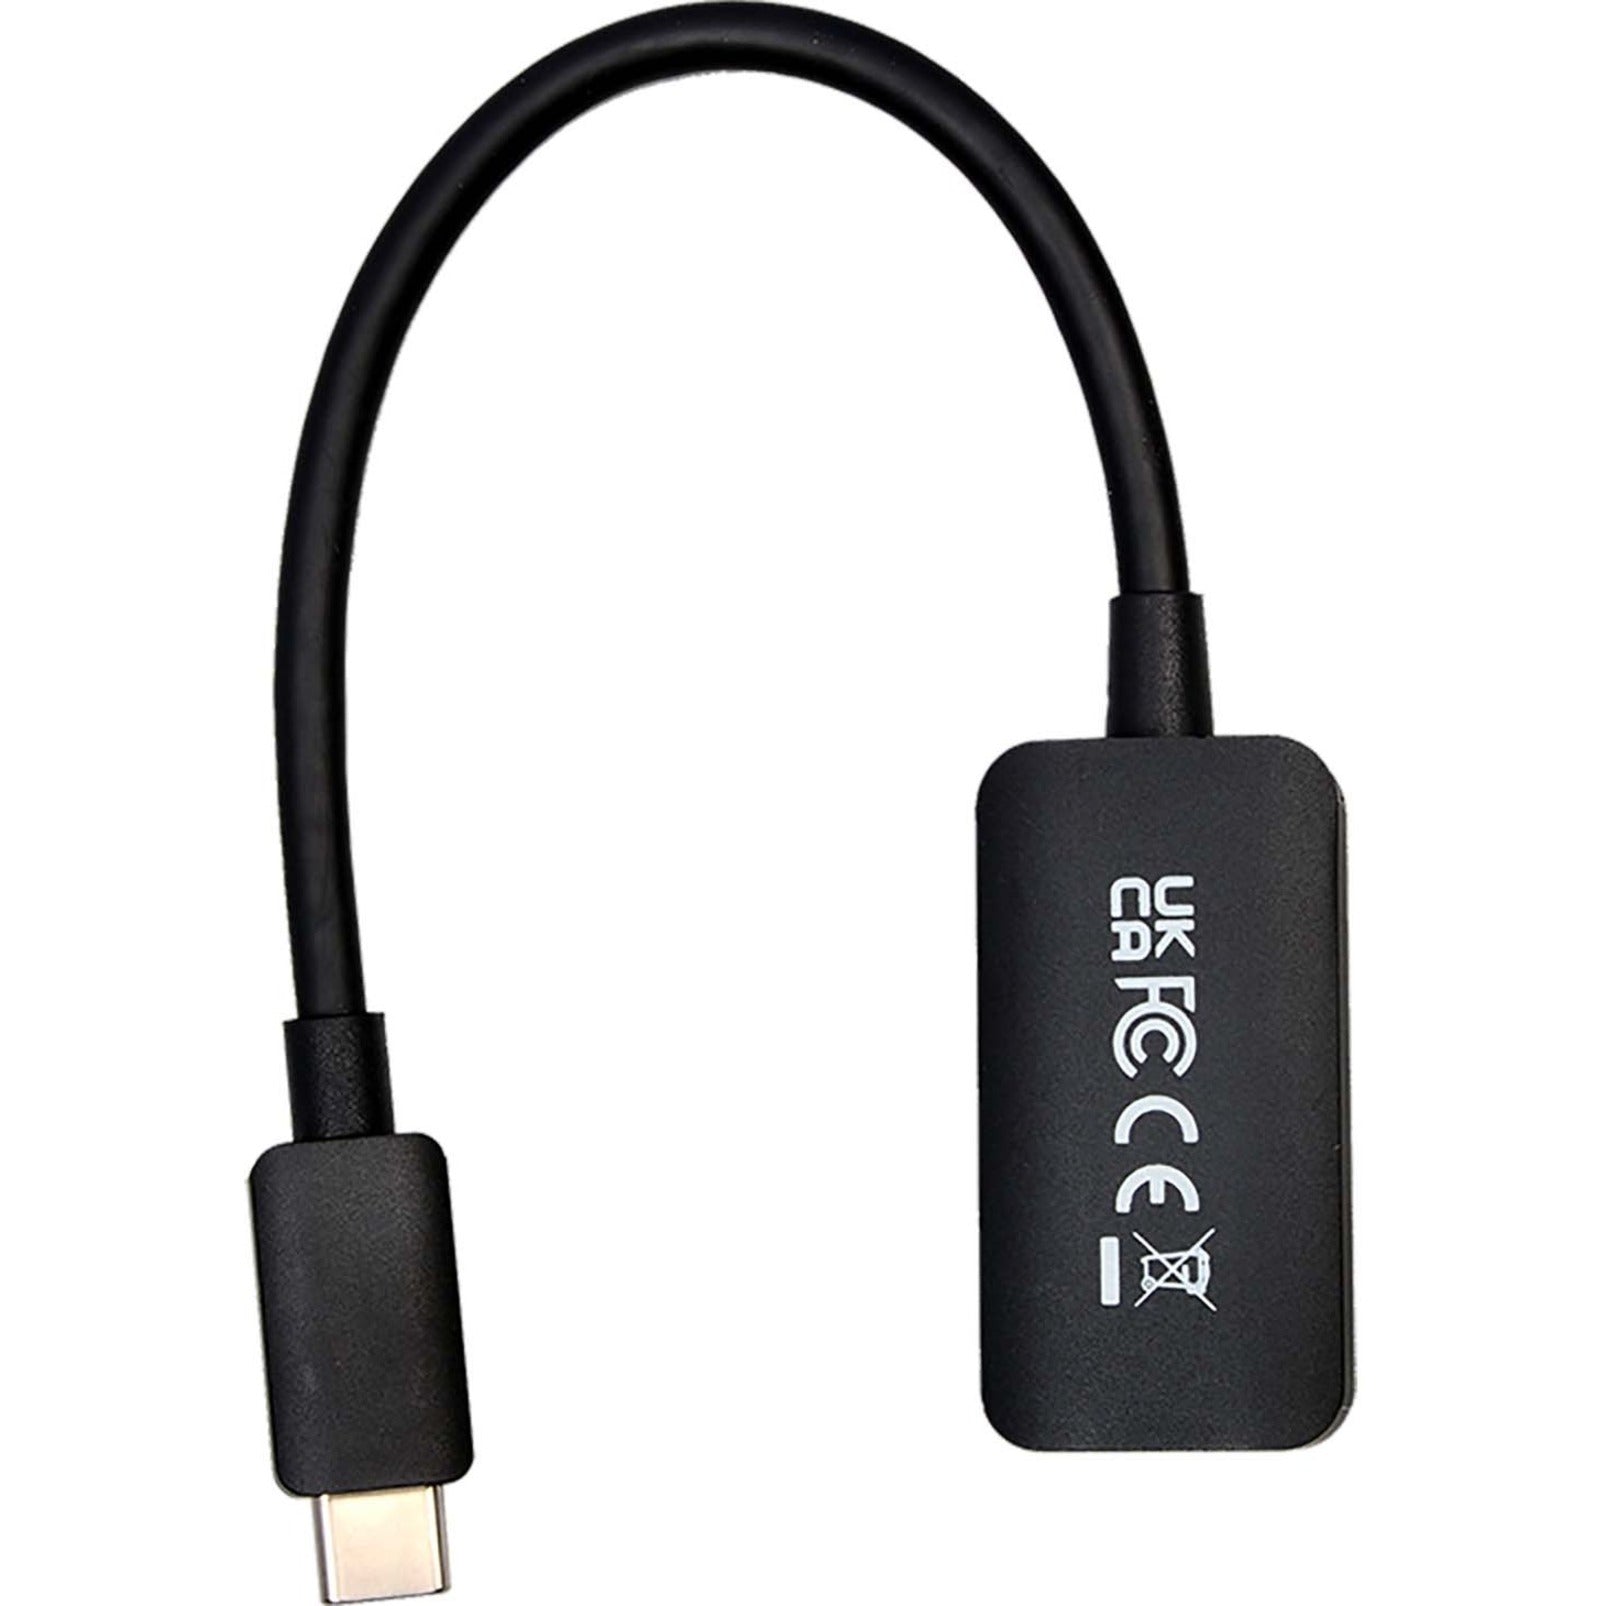 V7 V7USBCHDMI4K60HZ USB-C ذكر إلى HDMI 2.0 أنثى 21.6 جيجابت في الثانية Ultra HD 4K، محمي، ادخل واستخدم. V7 هو اسم العلامة التجارية.